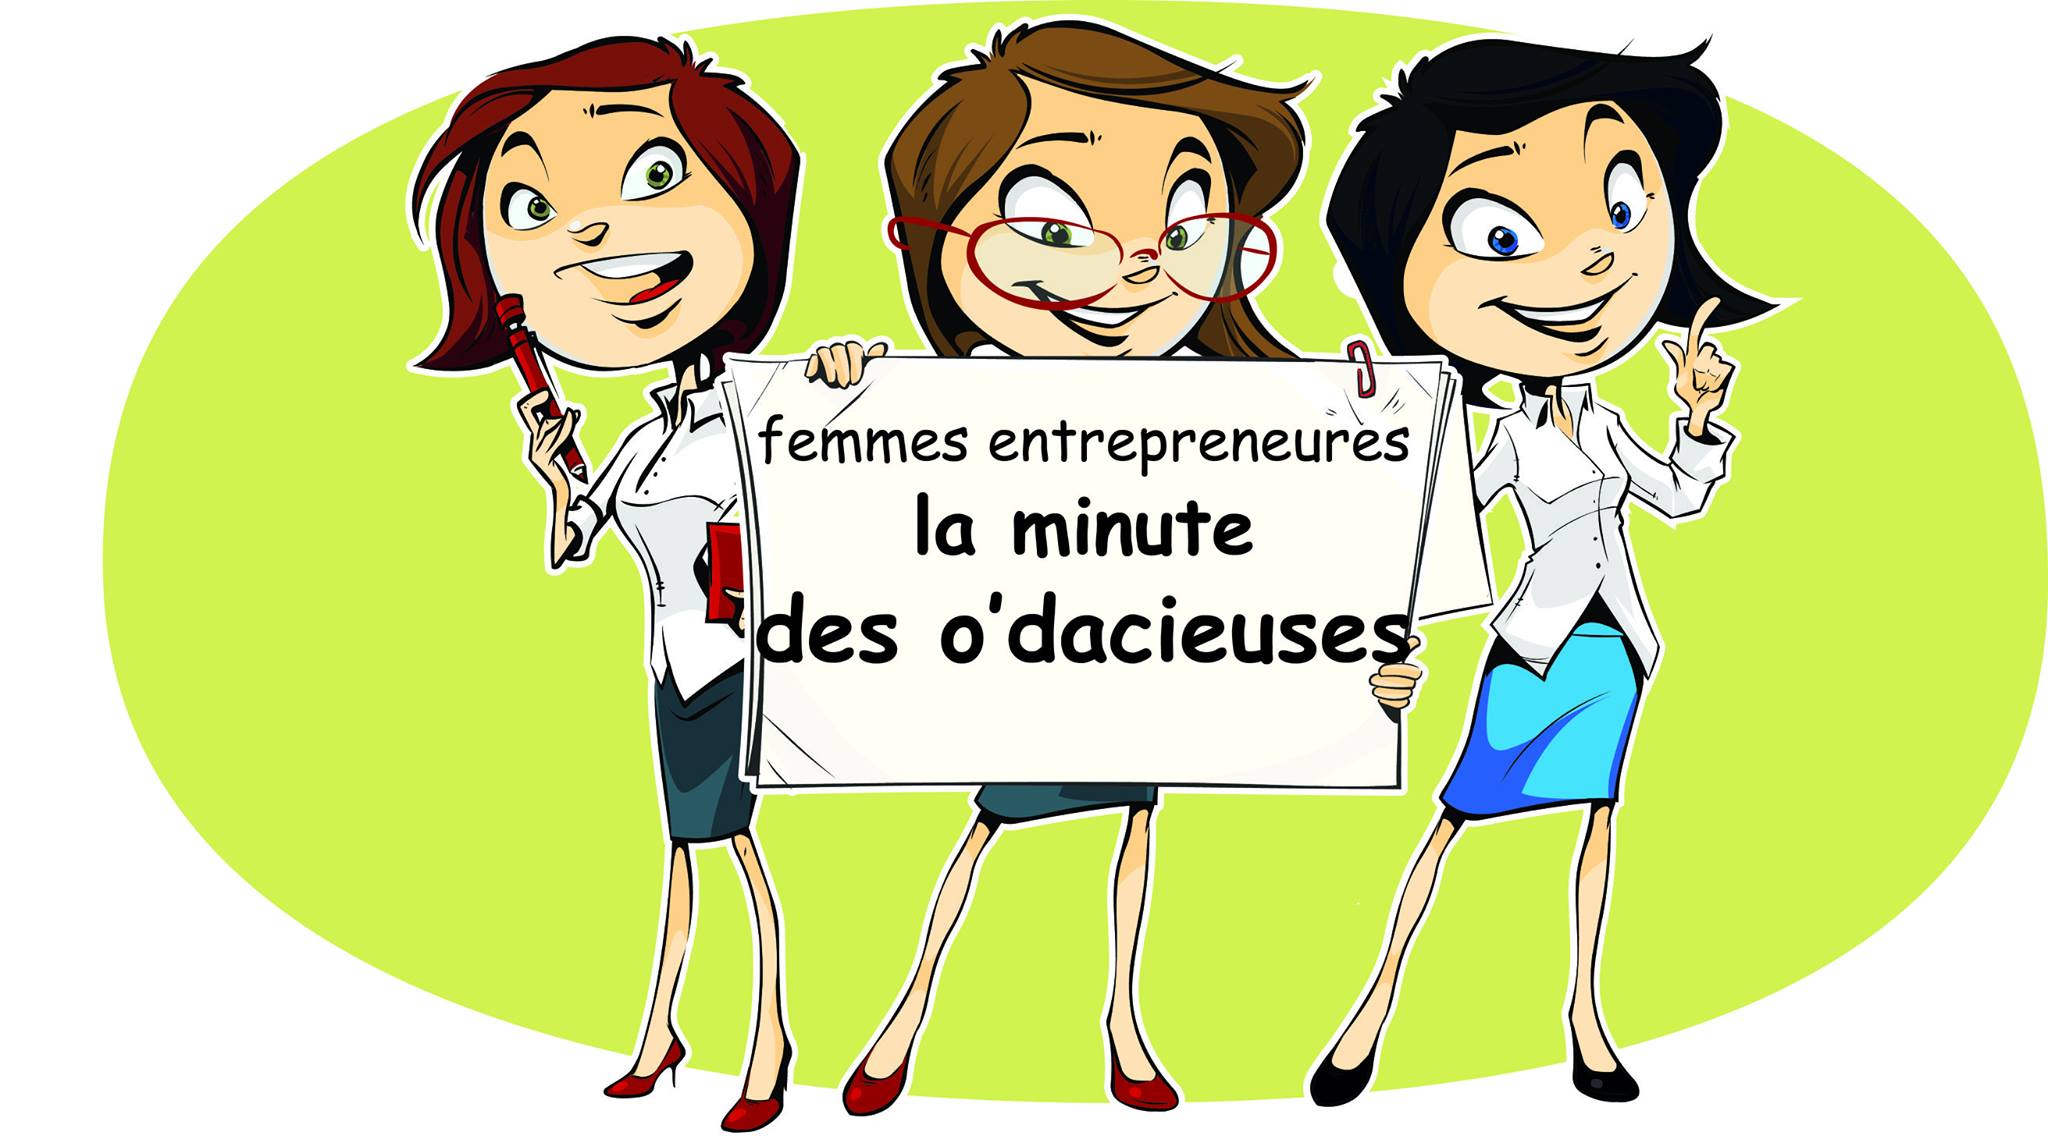 Les O'dacieuses, collectif de femmes entrepreneures